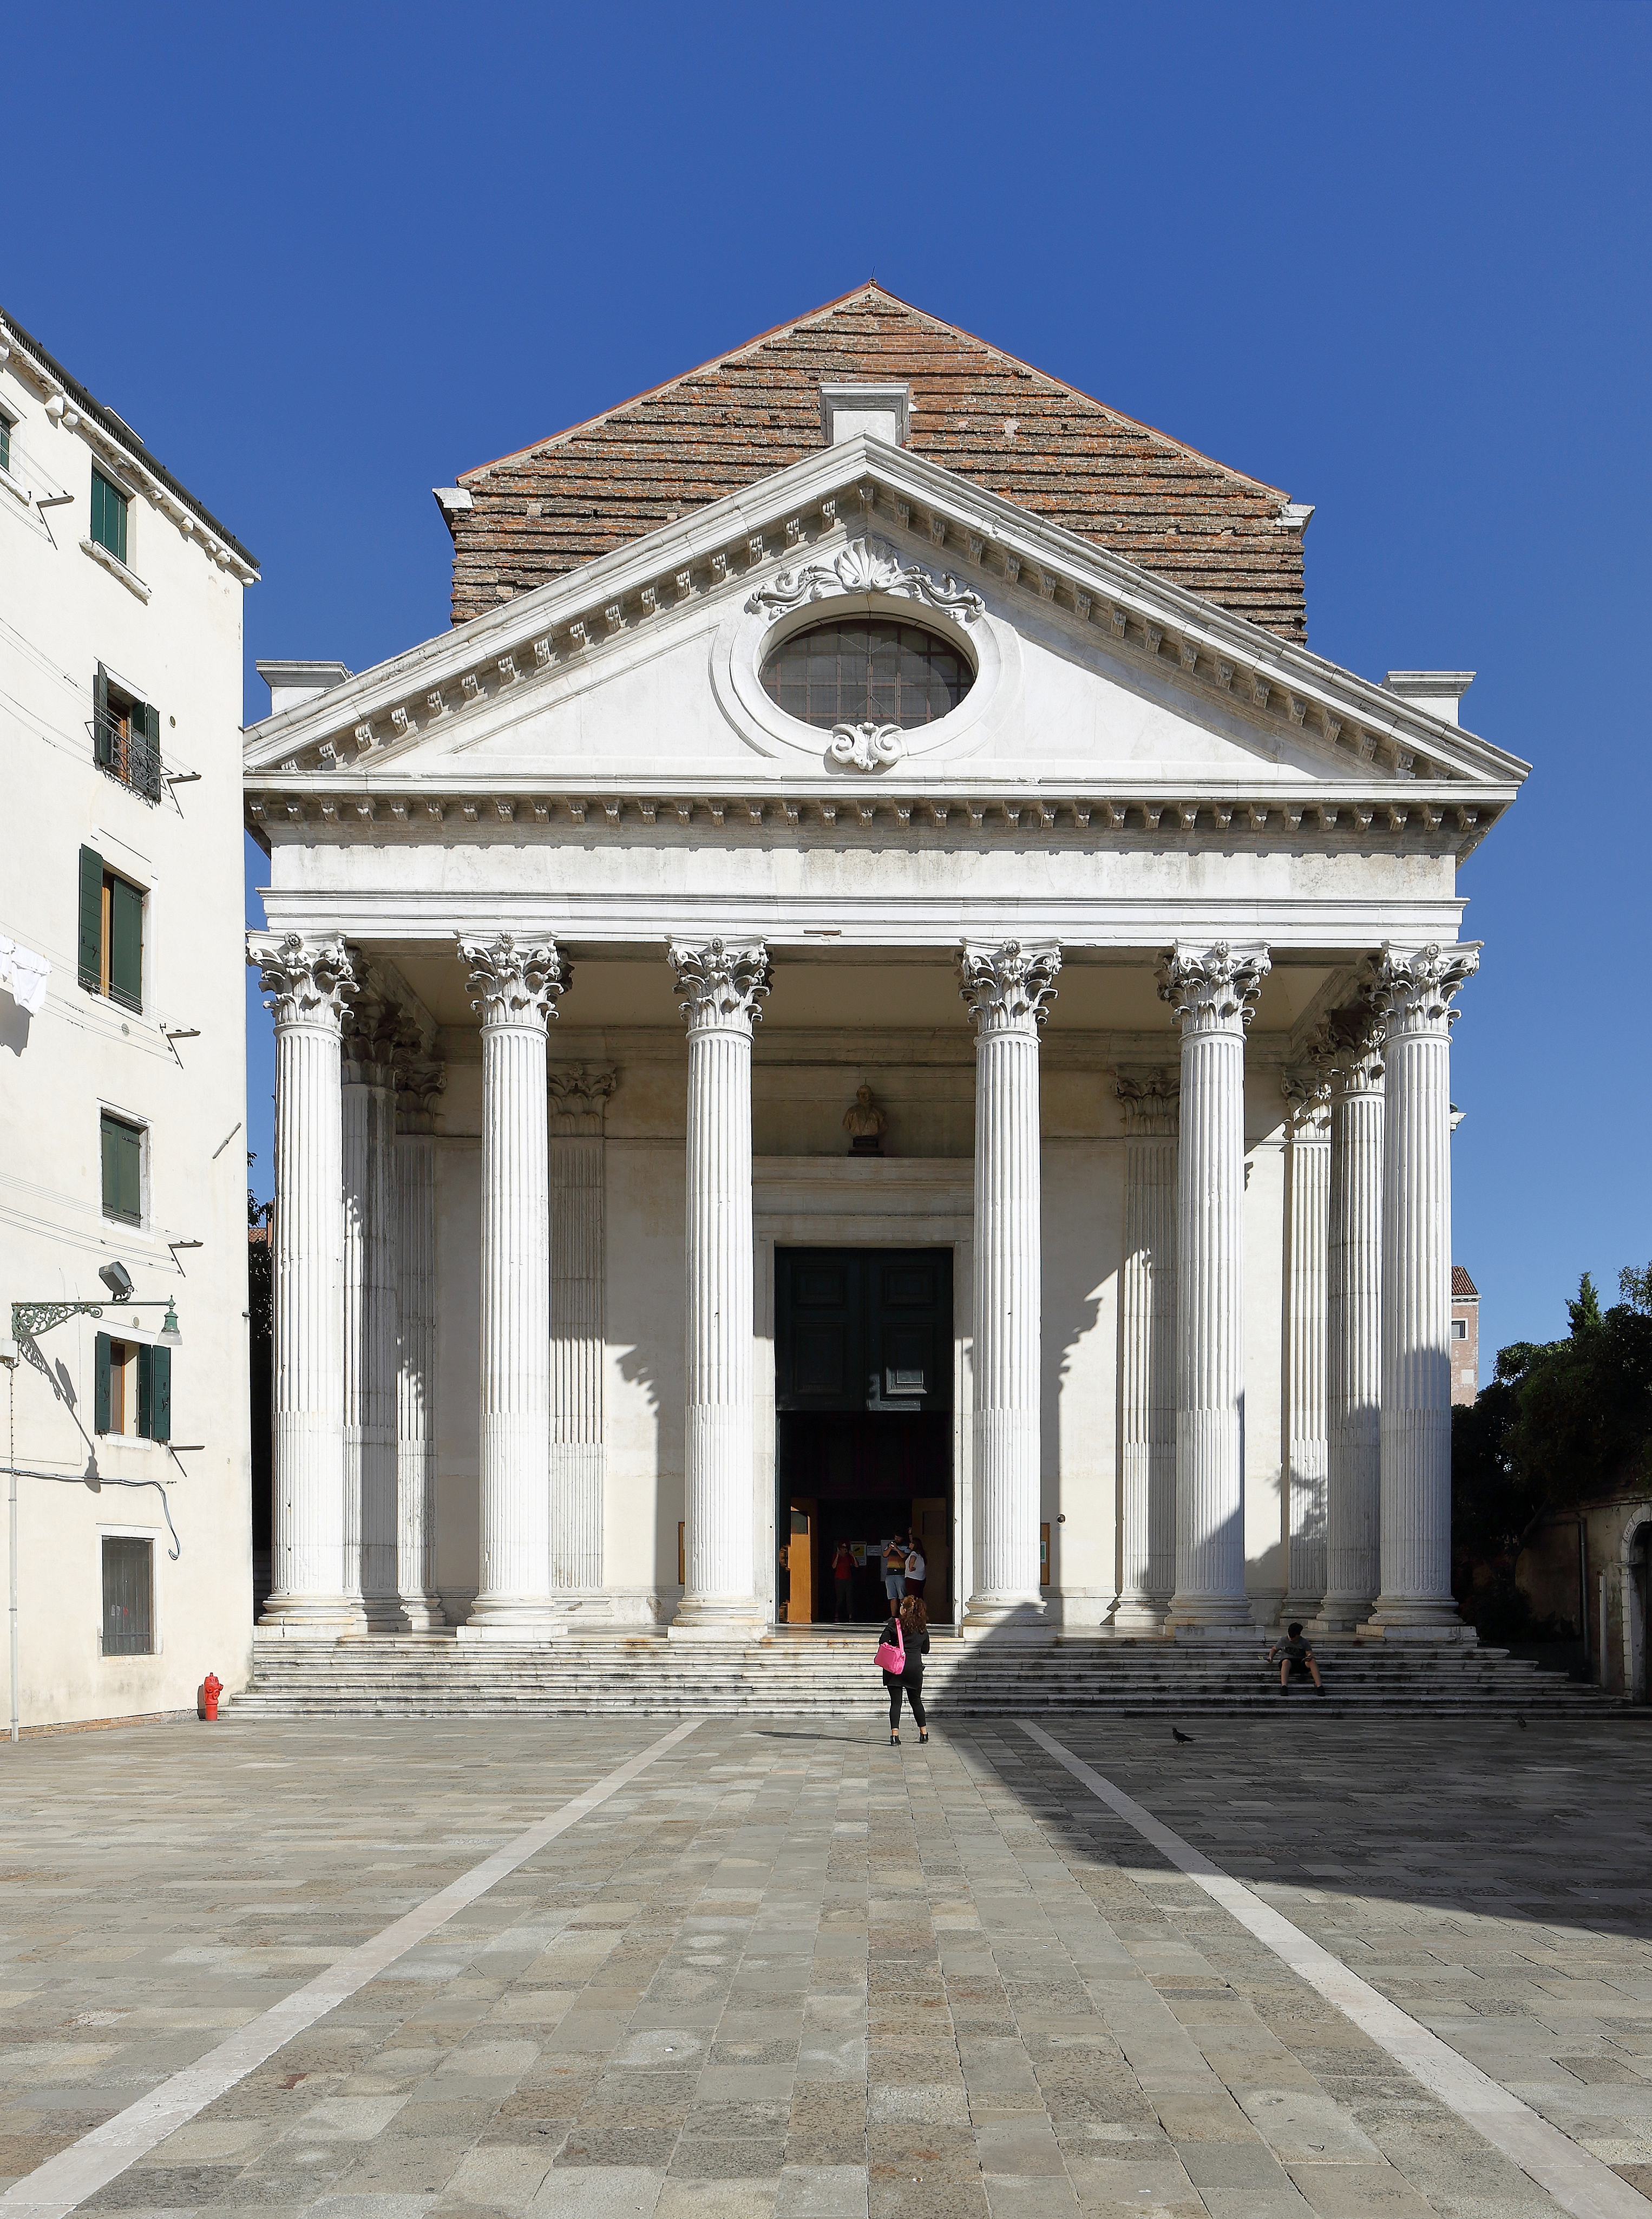 Chiesa di San Nicola da Tolentino, Venice - September 2017